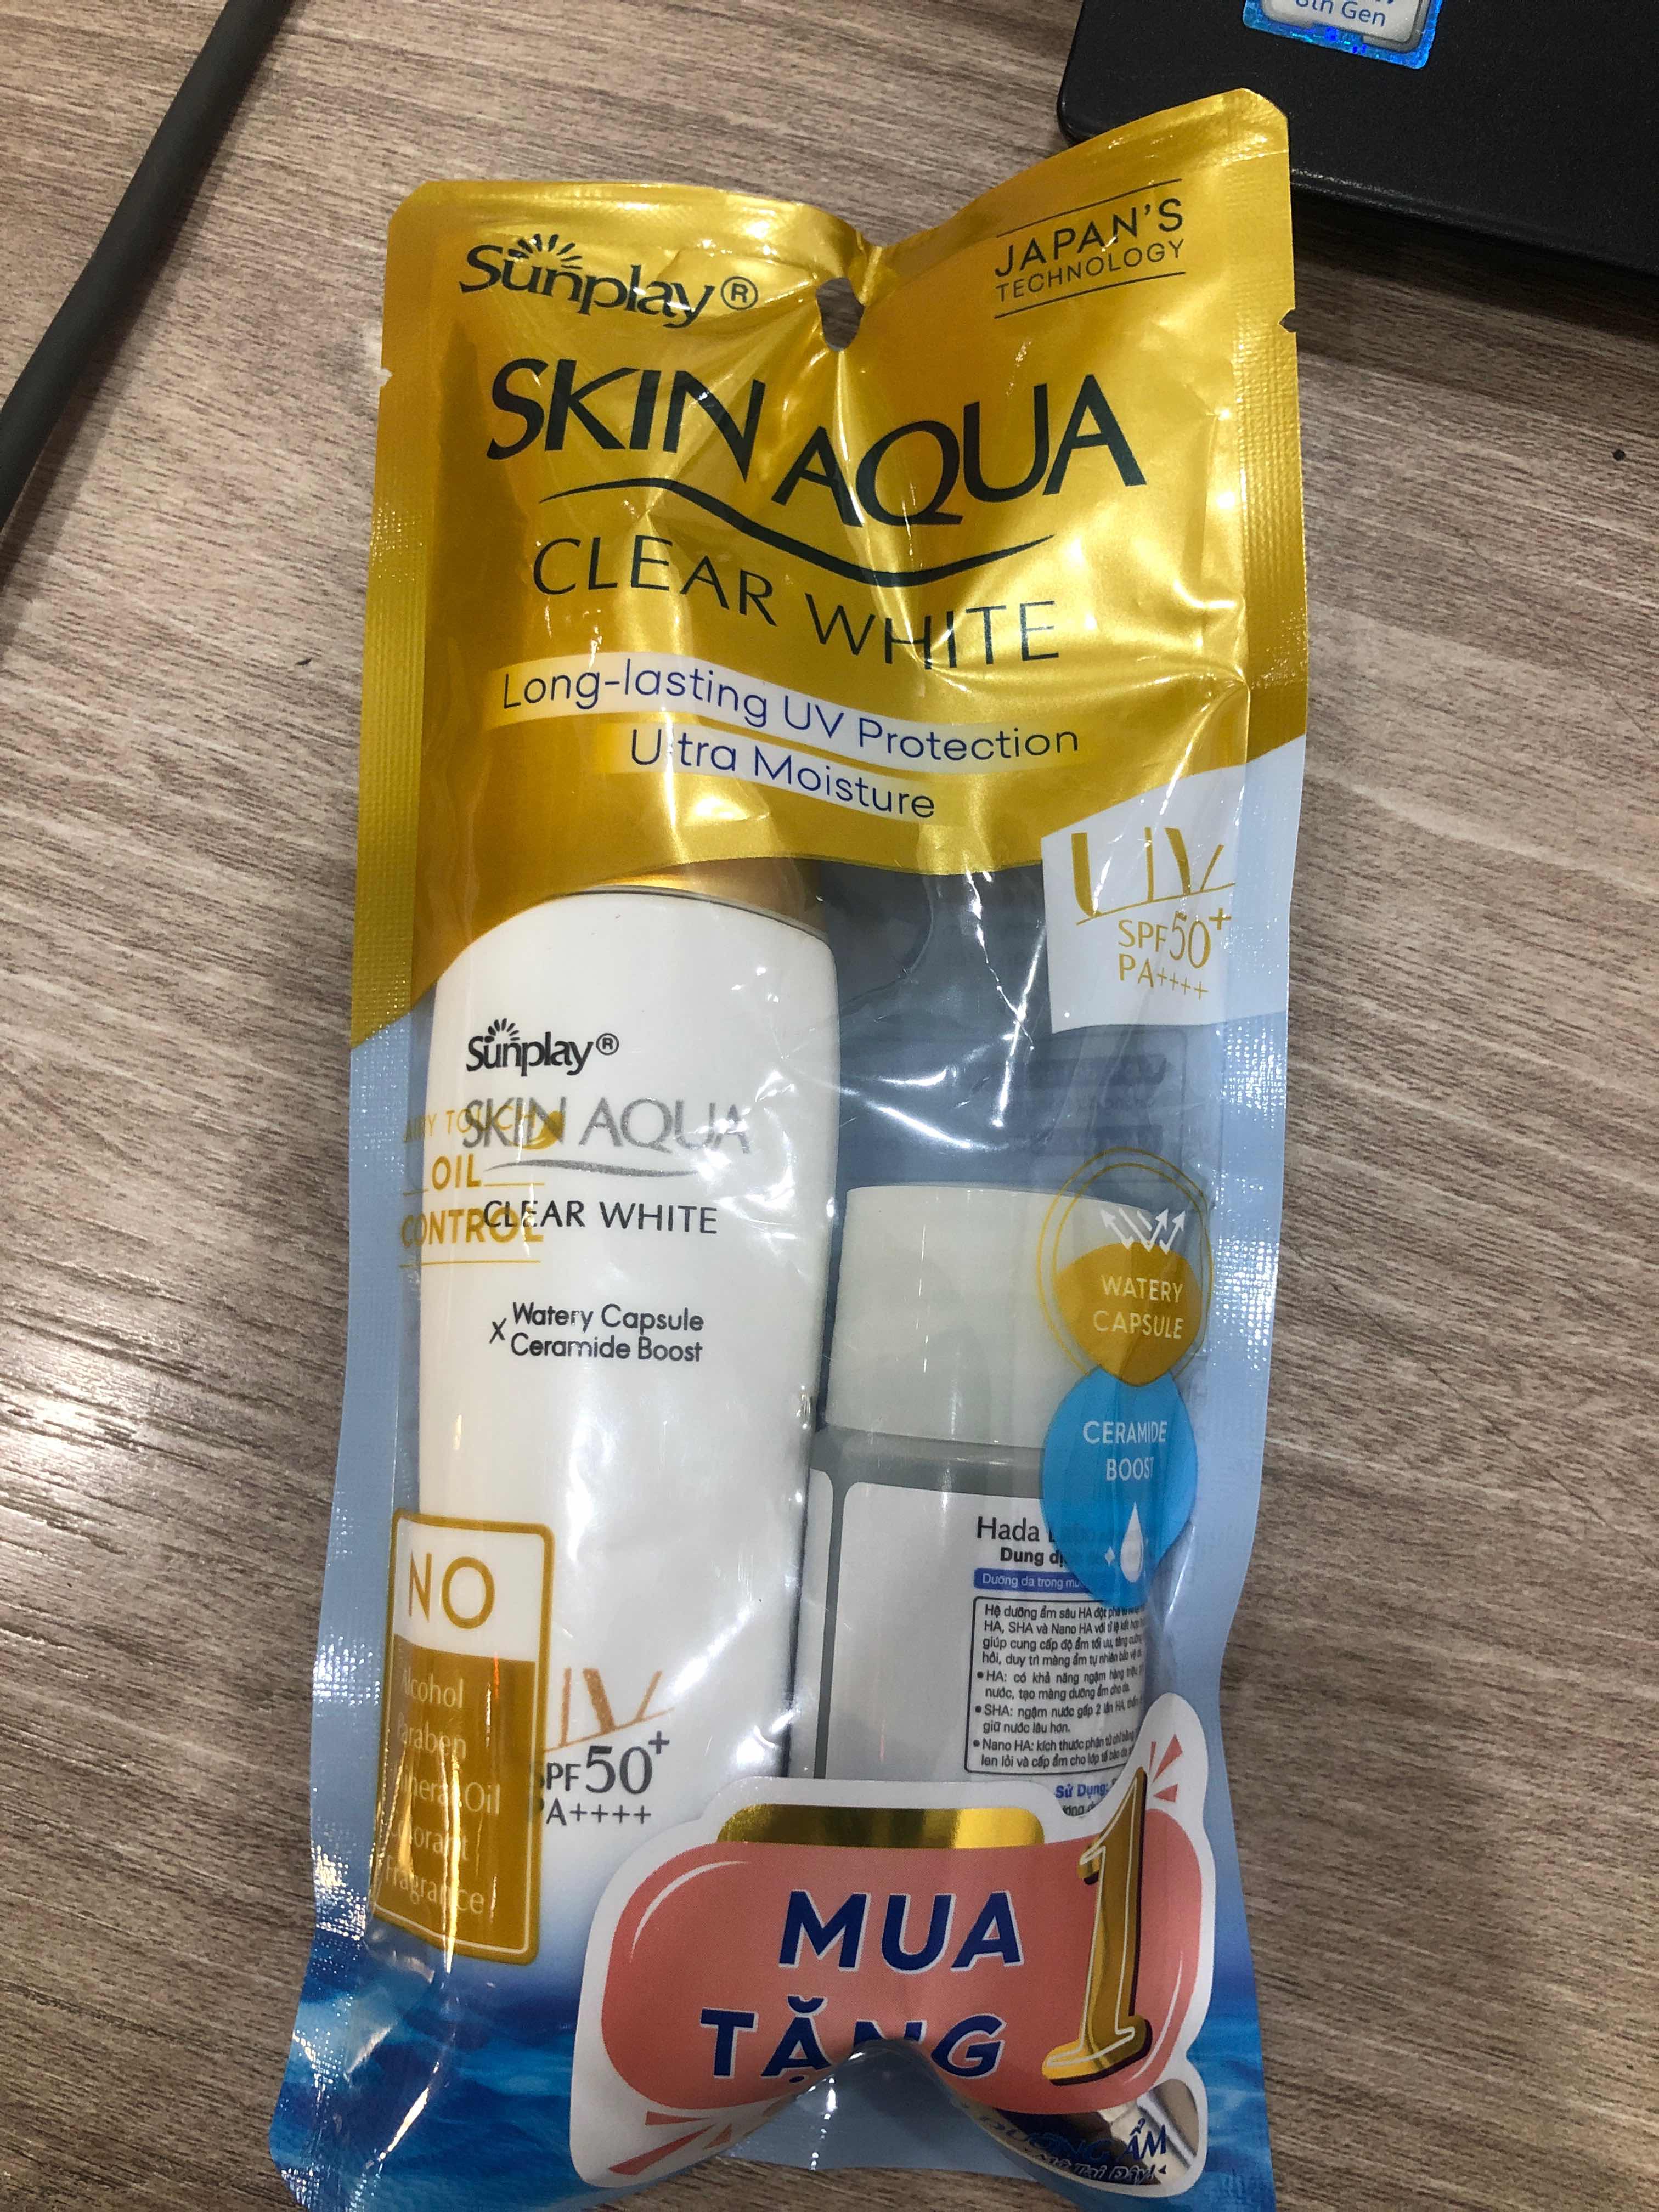 Sữa Chống Nắng Dưỡng Da Trắng Mịn Tối Ưu Sunplay Skin Aqua Clear White SPF50+ 25g